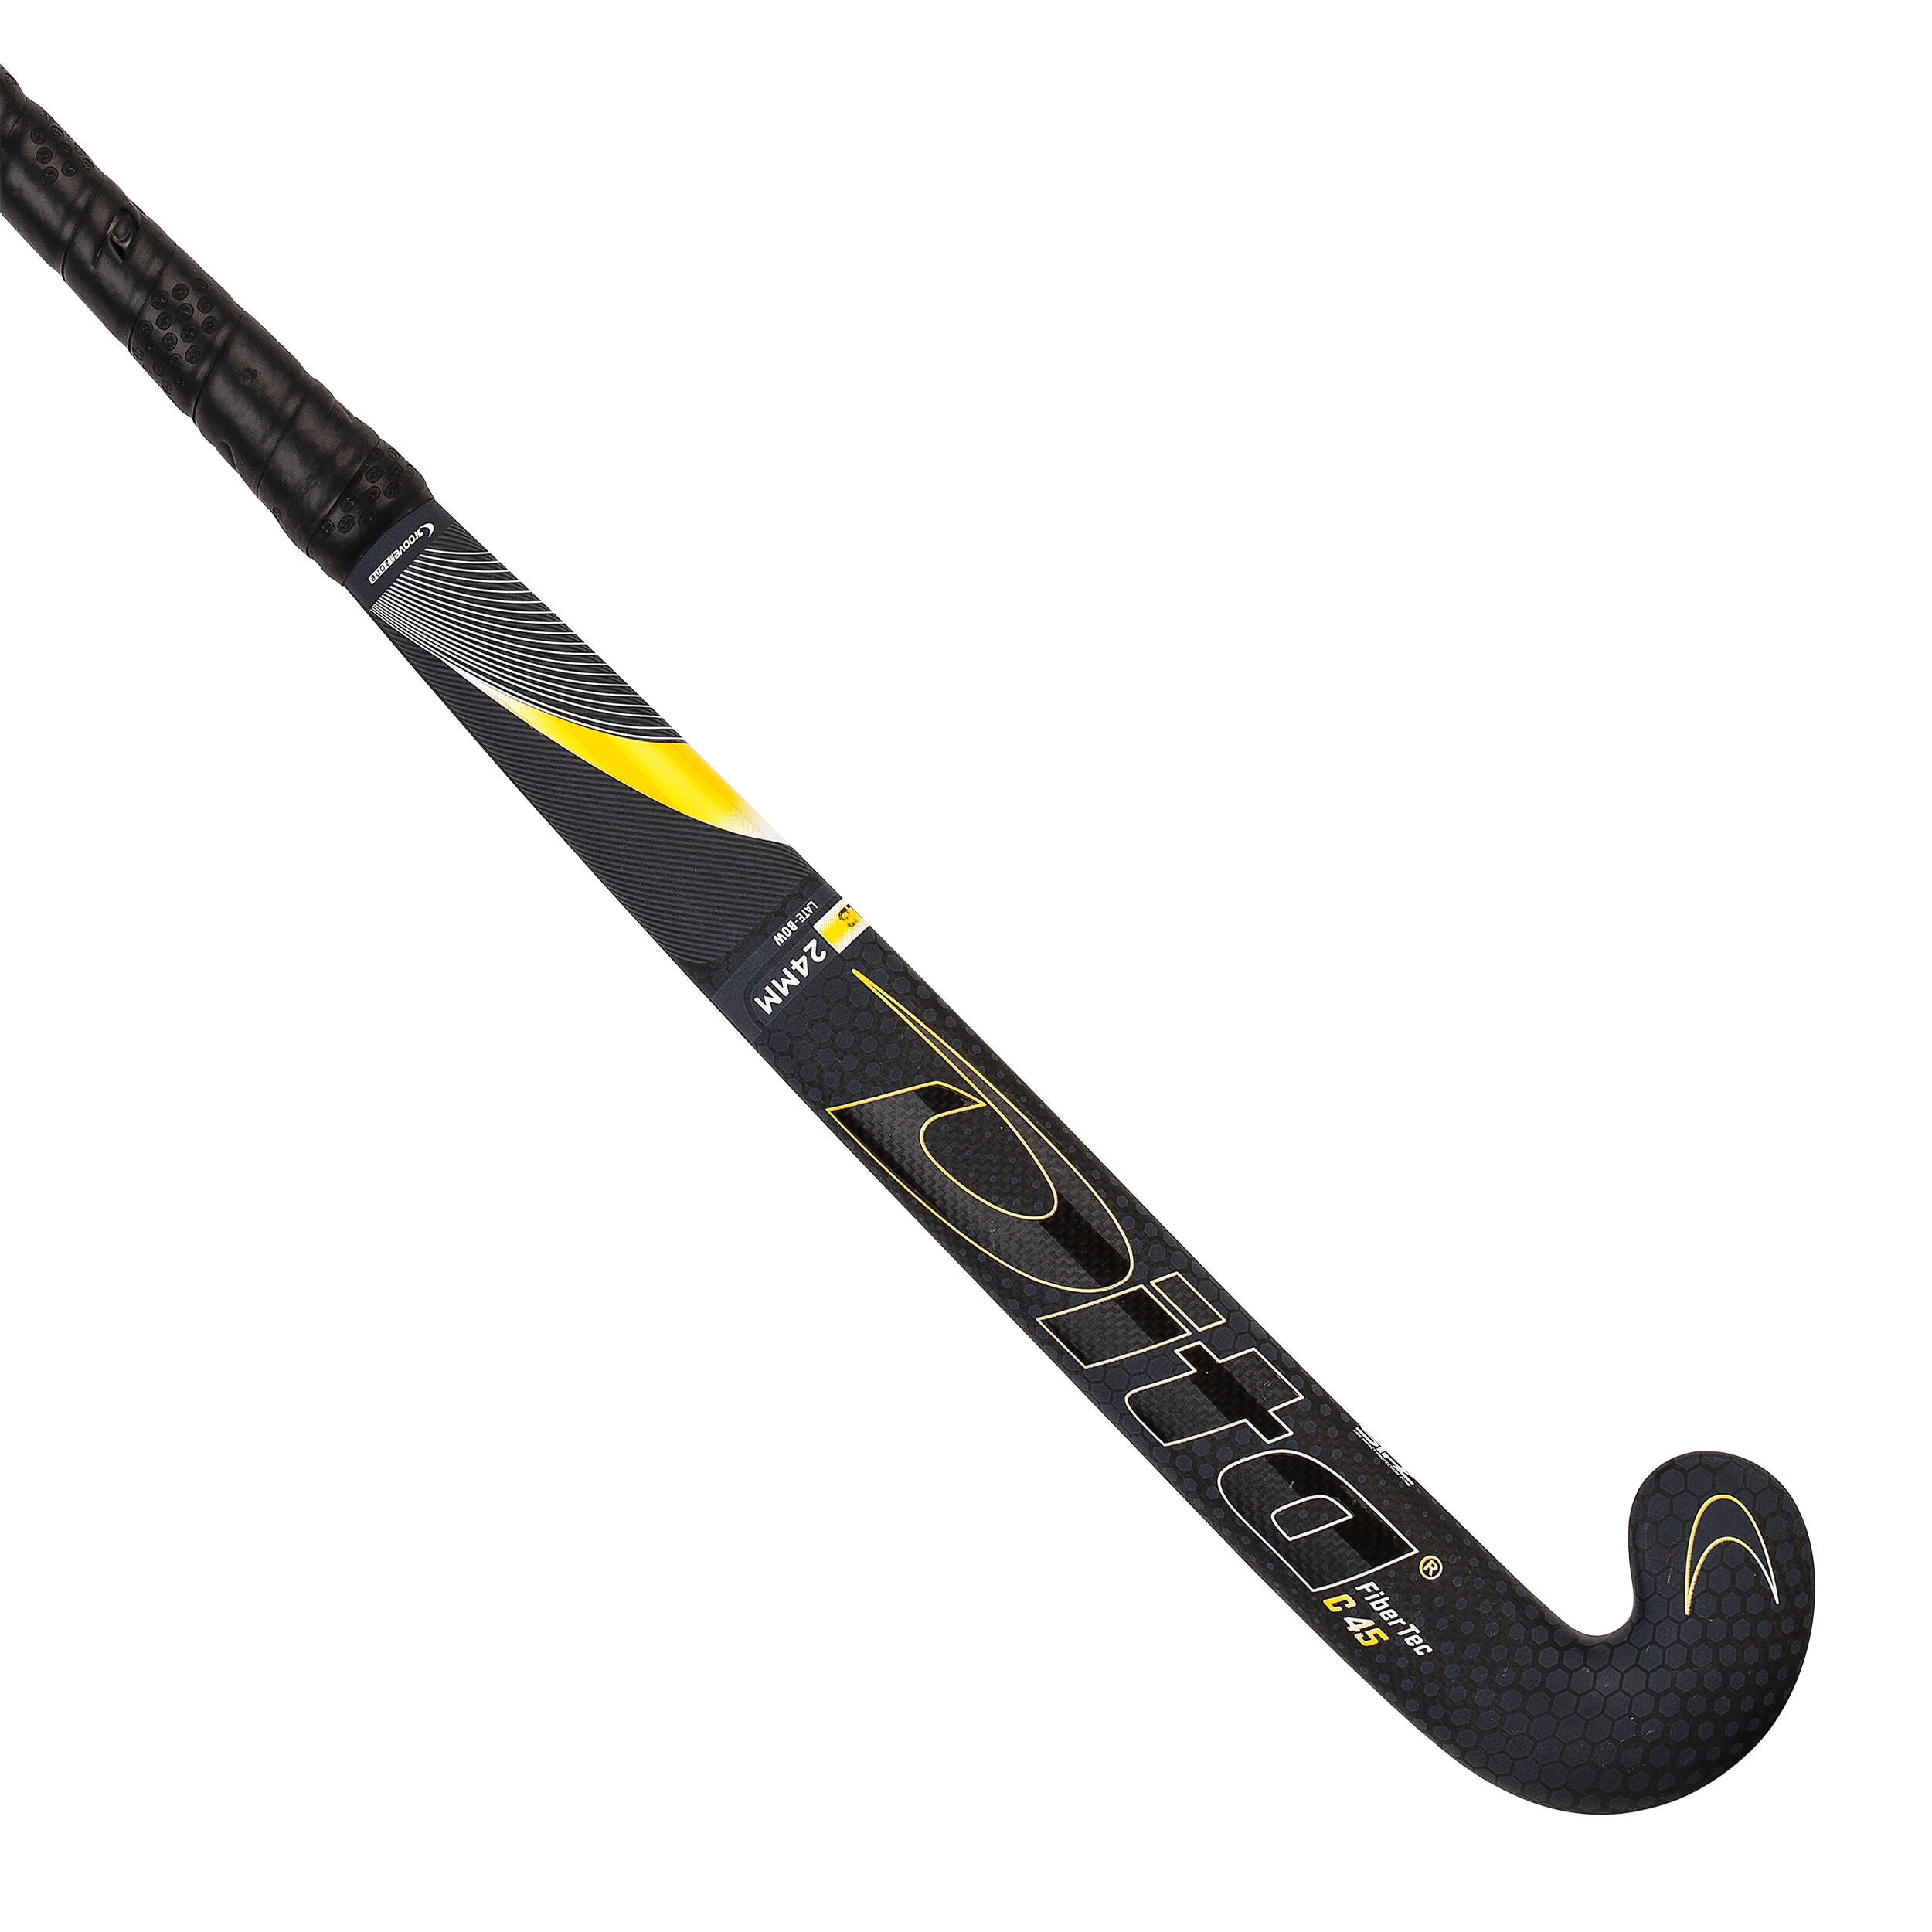 DITA Adult Intermediate 45% Carbon Low Bow Field Hockey Stick FiberTec - Black/Gold